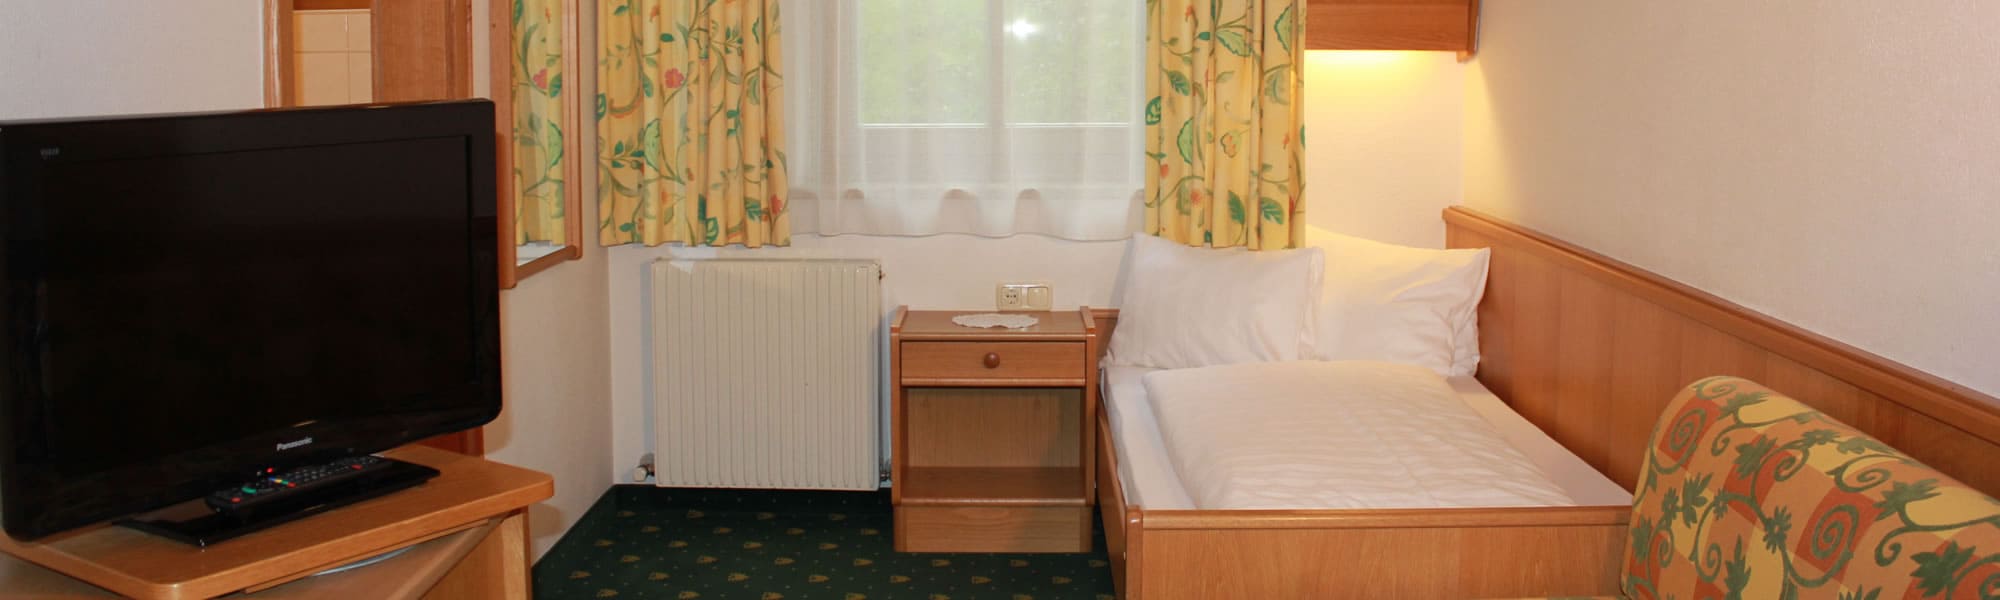 Einzelzimmer in Hotel Dorfer, Großarl